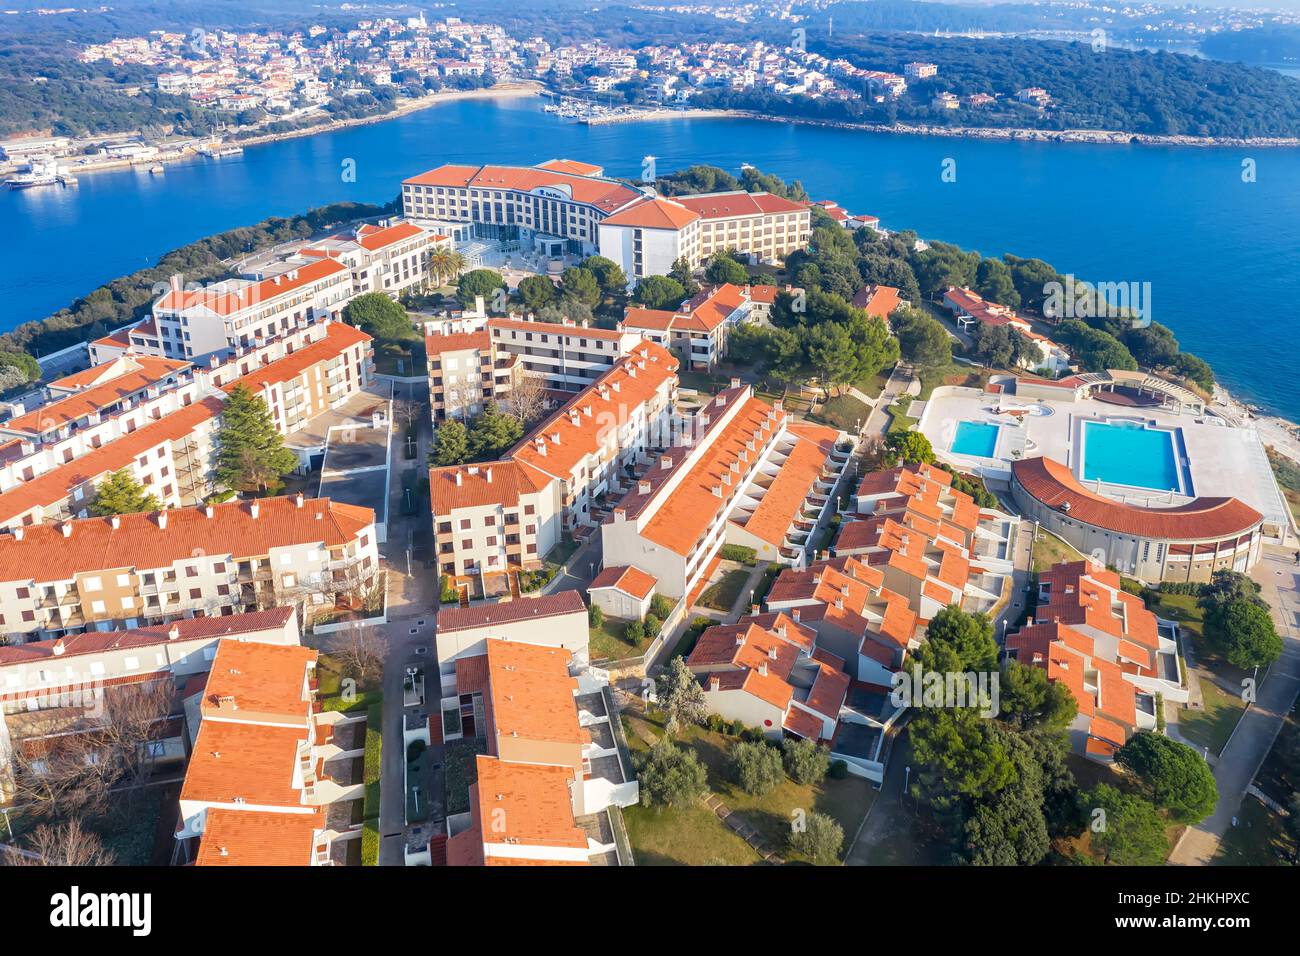 PULA, CROAZIA - 16 GENNAIO 2021 - moderno Hotel Park Plaza e strutture alberghiere, sullo sfondo Pjescana Uvala, vista aerea, Pula, Istria, Croazia Foto Stock